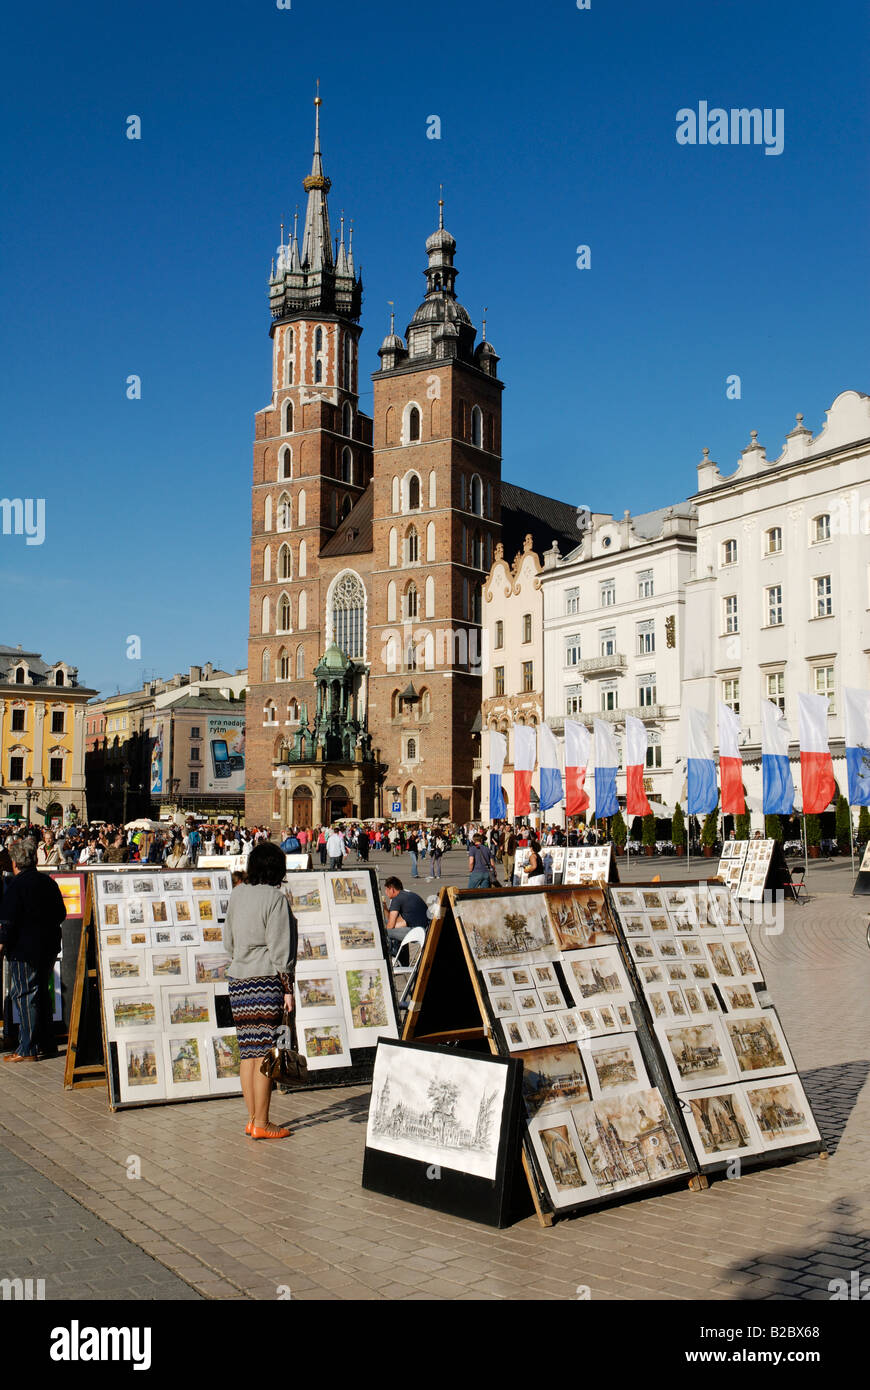 Kunstmarkt am Krakauer Marktplatz Rynek, UNESCO-Weltkulturerbe, Polen, Europa Stockfoto